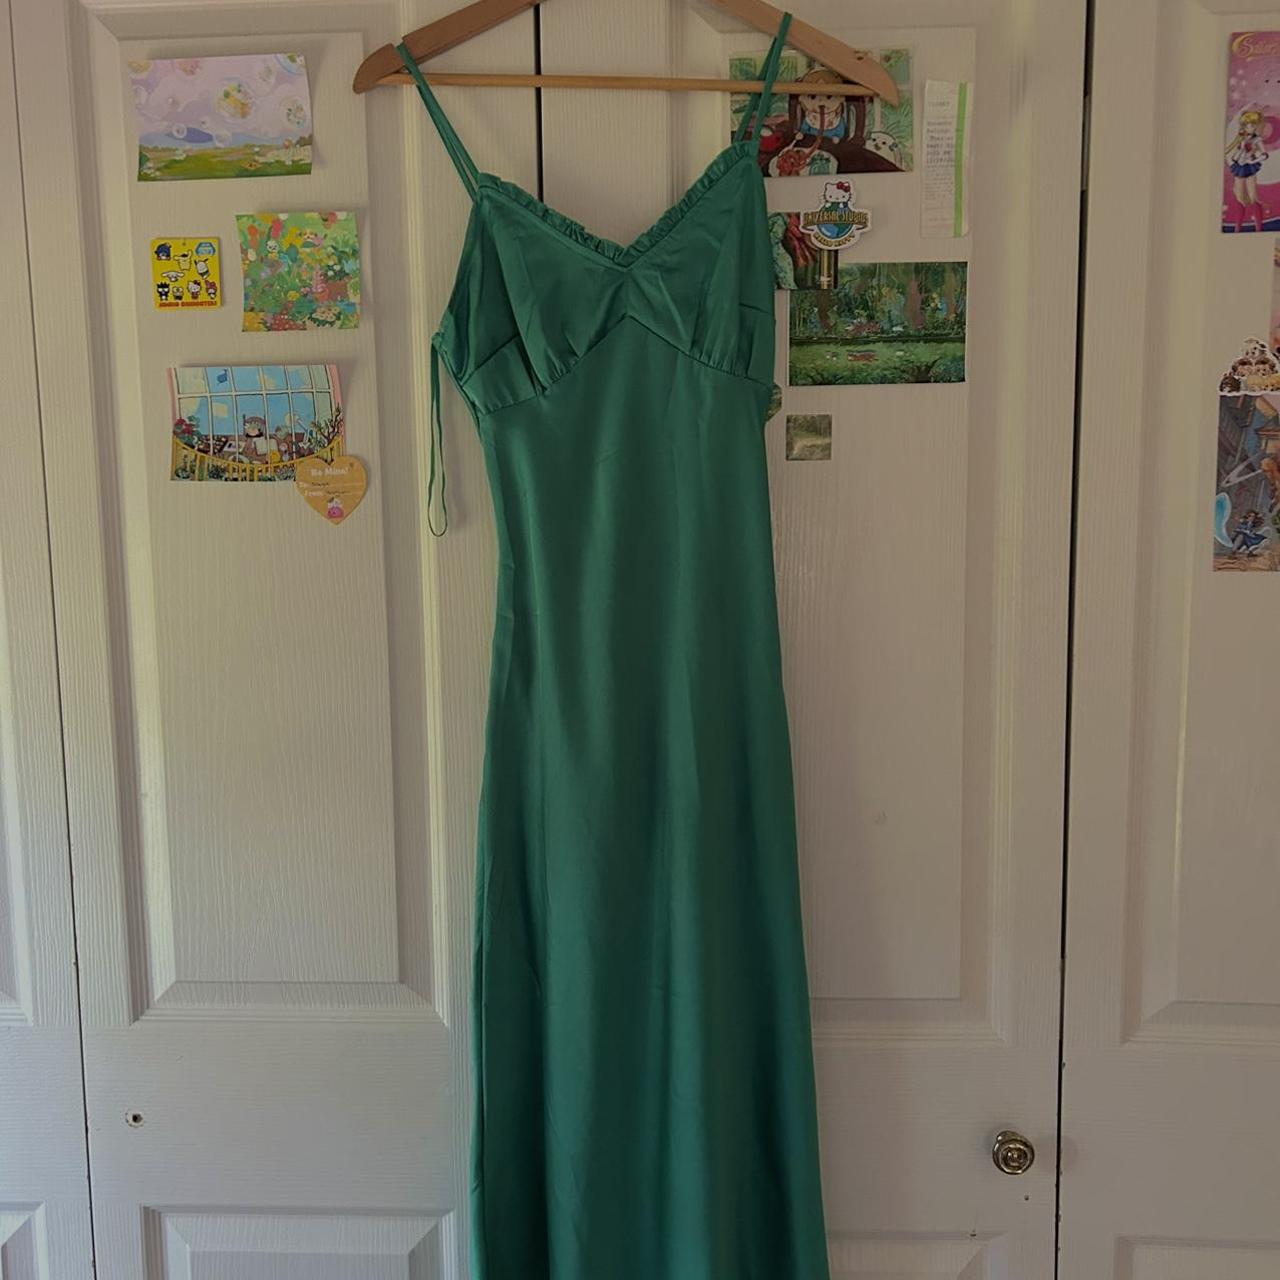 foresty satin emerald green midi dress 🪲🌱 - fits... - Depop